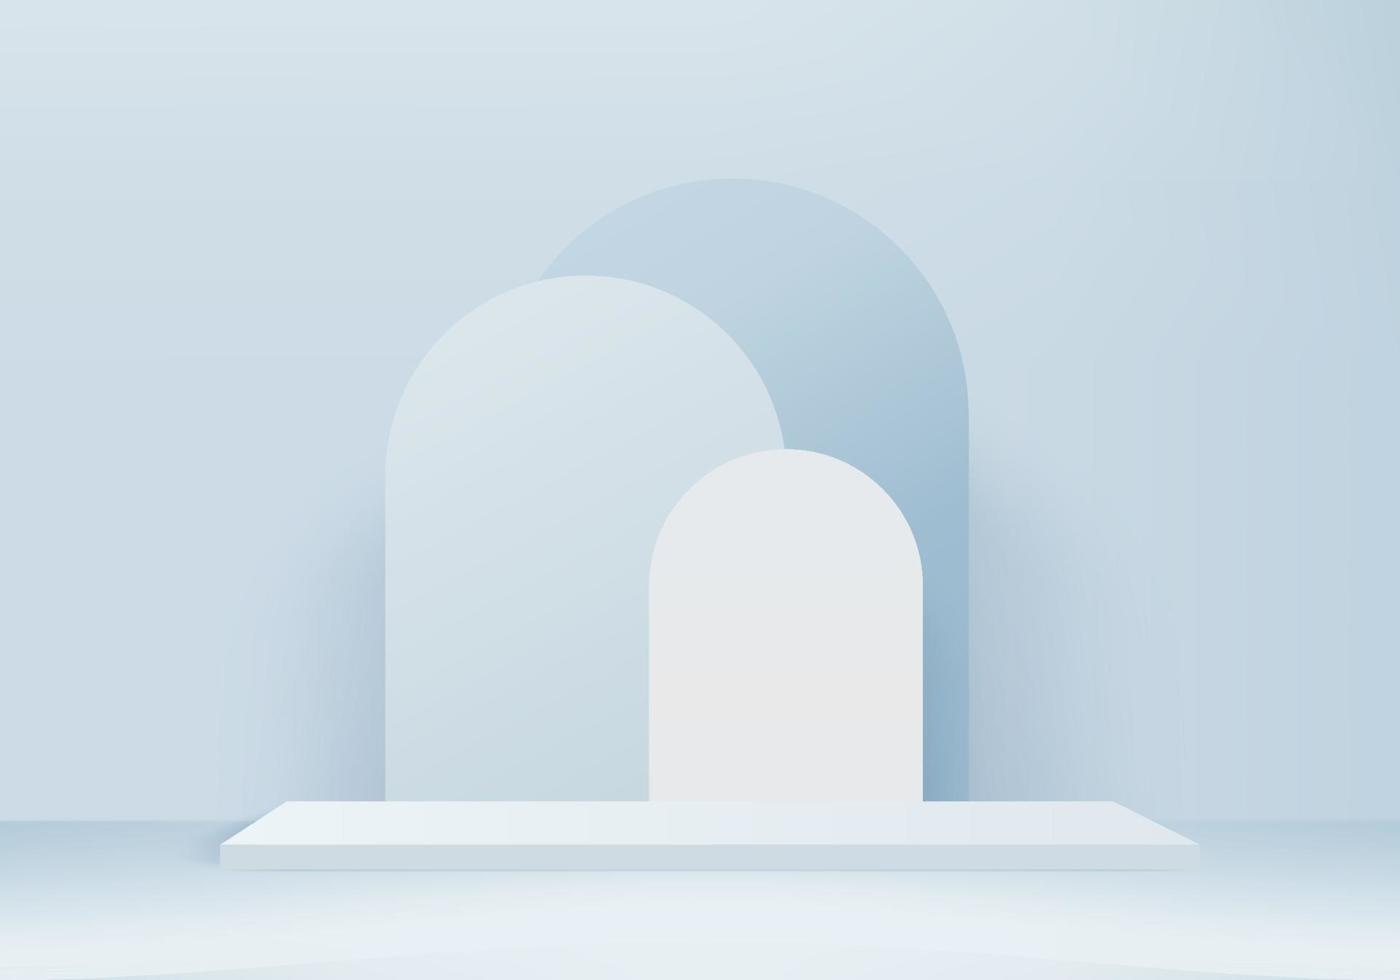 Imagem do pódio da exibição do produto em plano de fundo 3D com vetor de fundo de plataforma geométrica Renderização em 3D com suporte de pódio para mostrar a vitrine de palco de produtos cosméticos em um estúdio de exibição azul